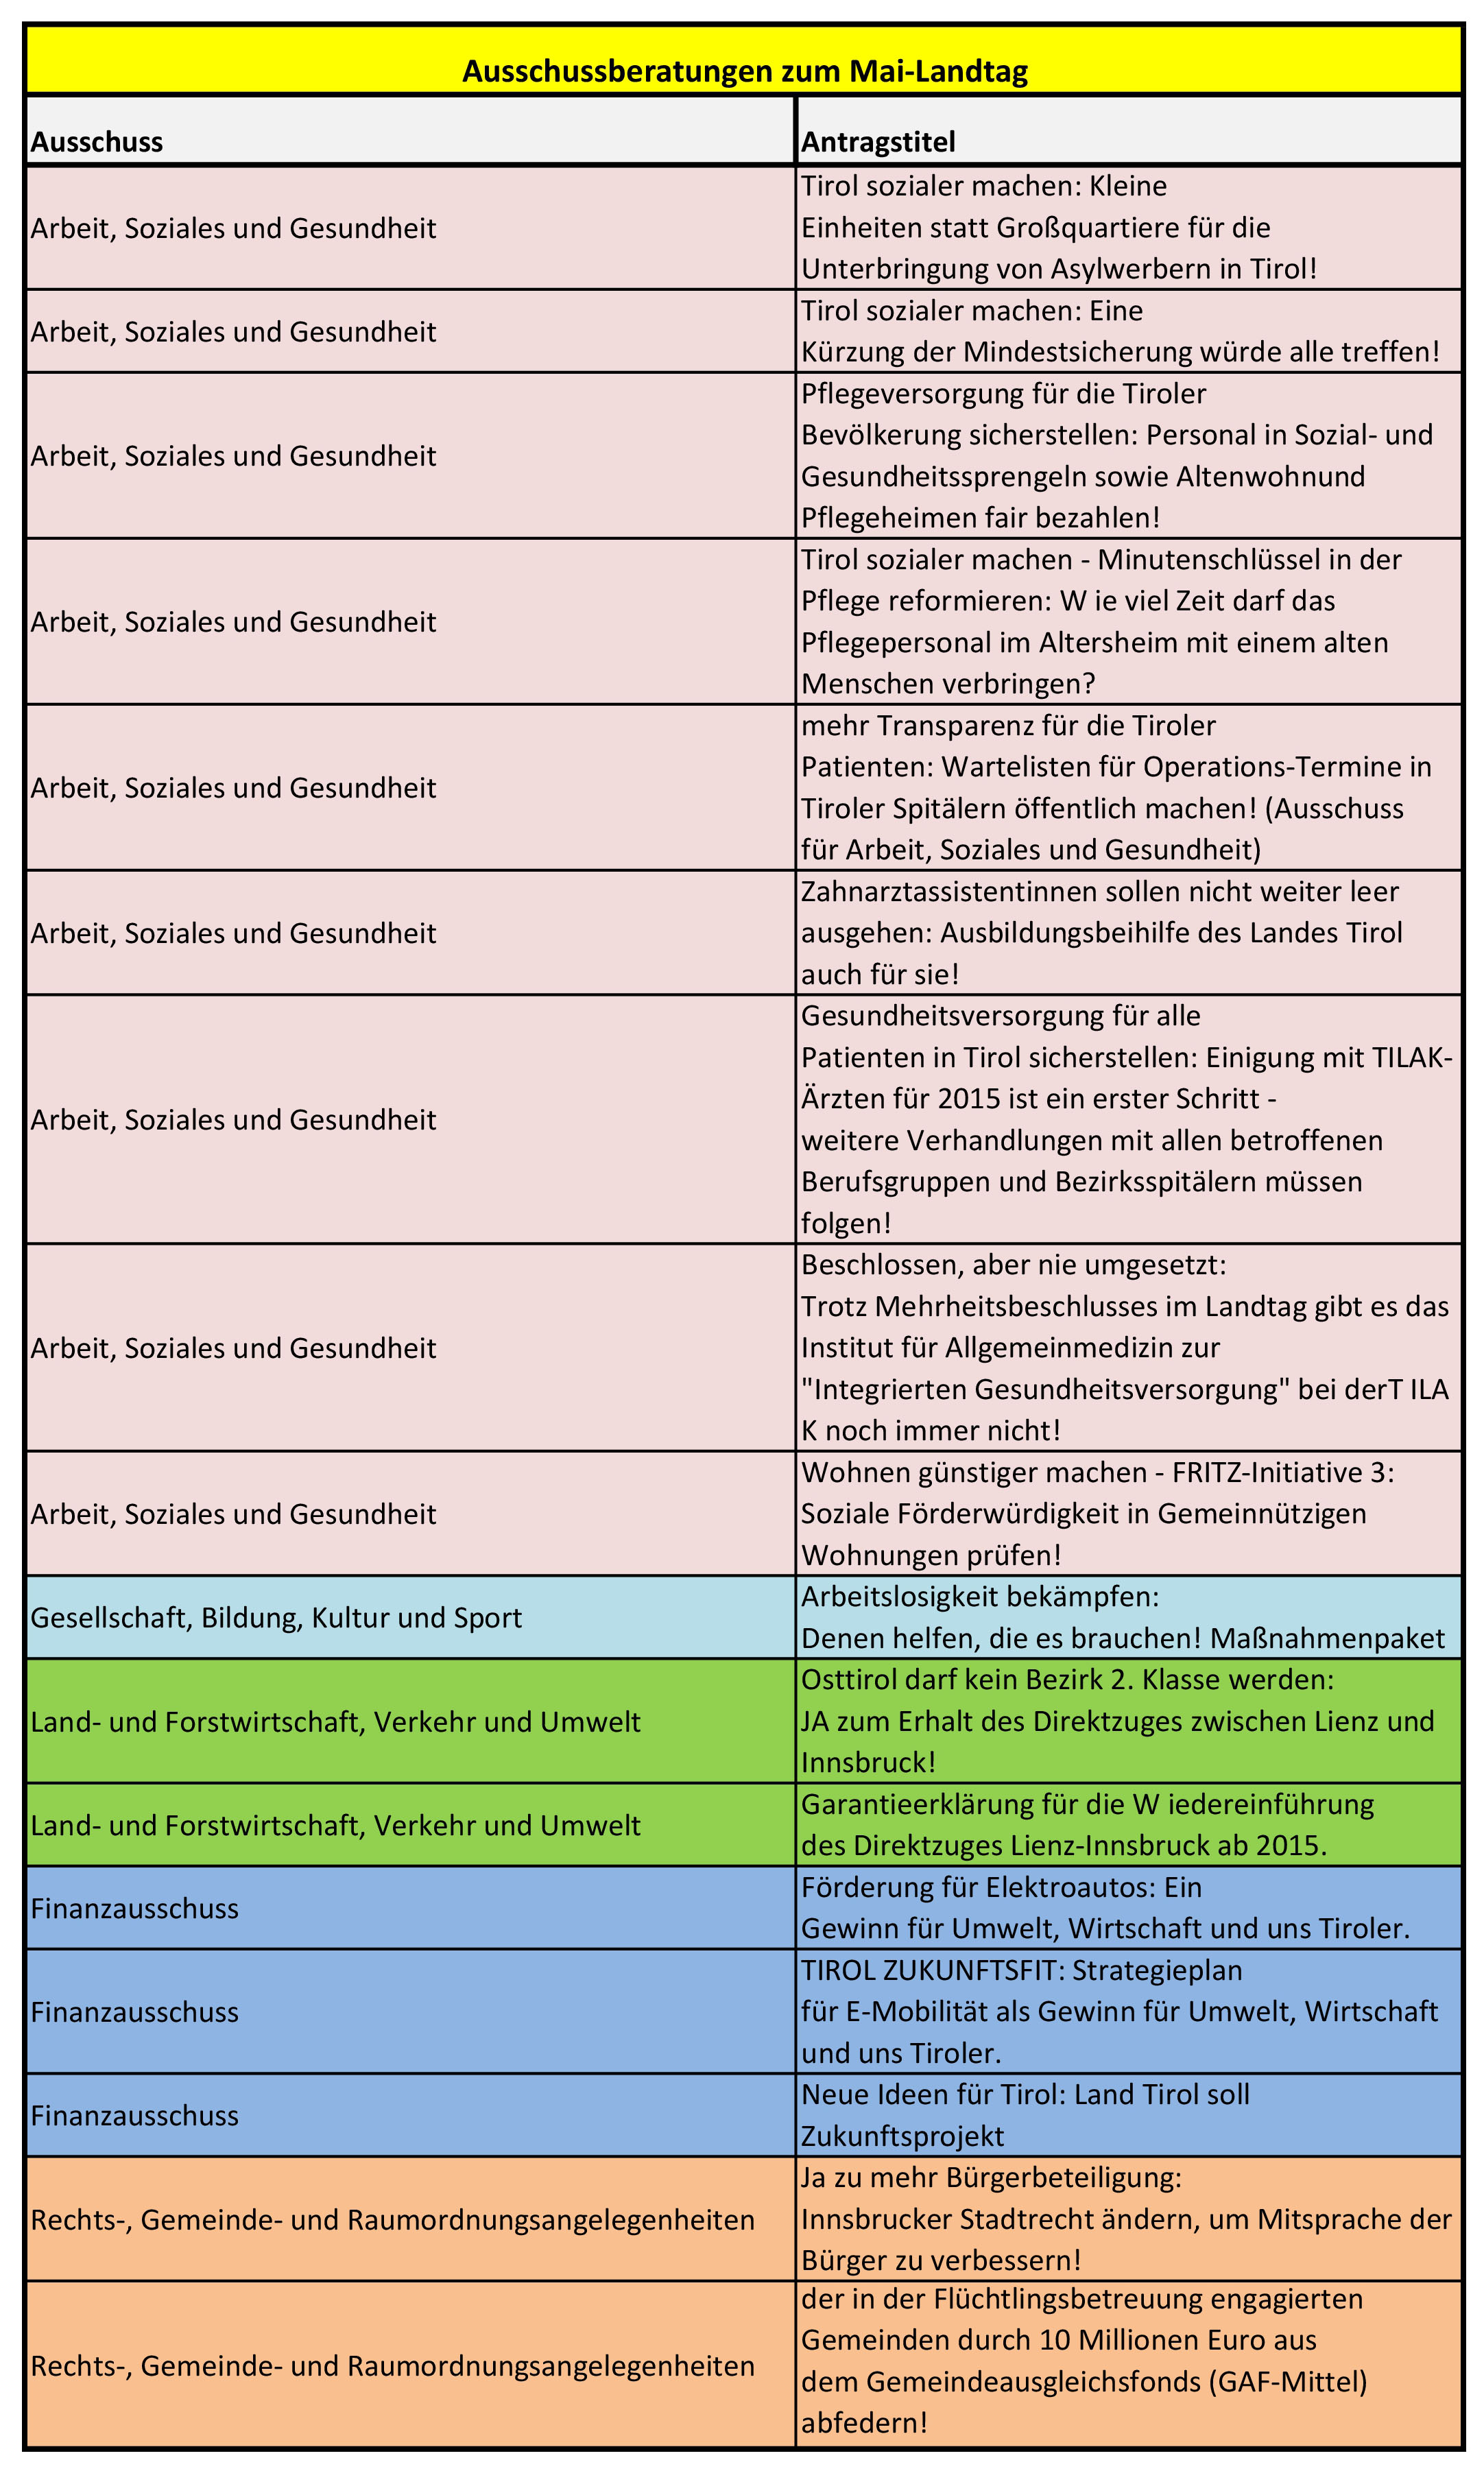 Die Liste Fritz-Anträge für den Mai-Landtag 2016 im Wortlaut